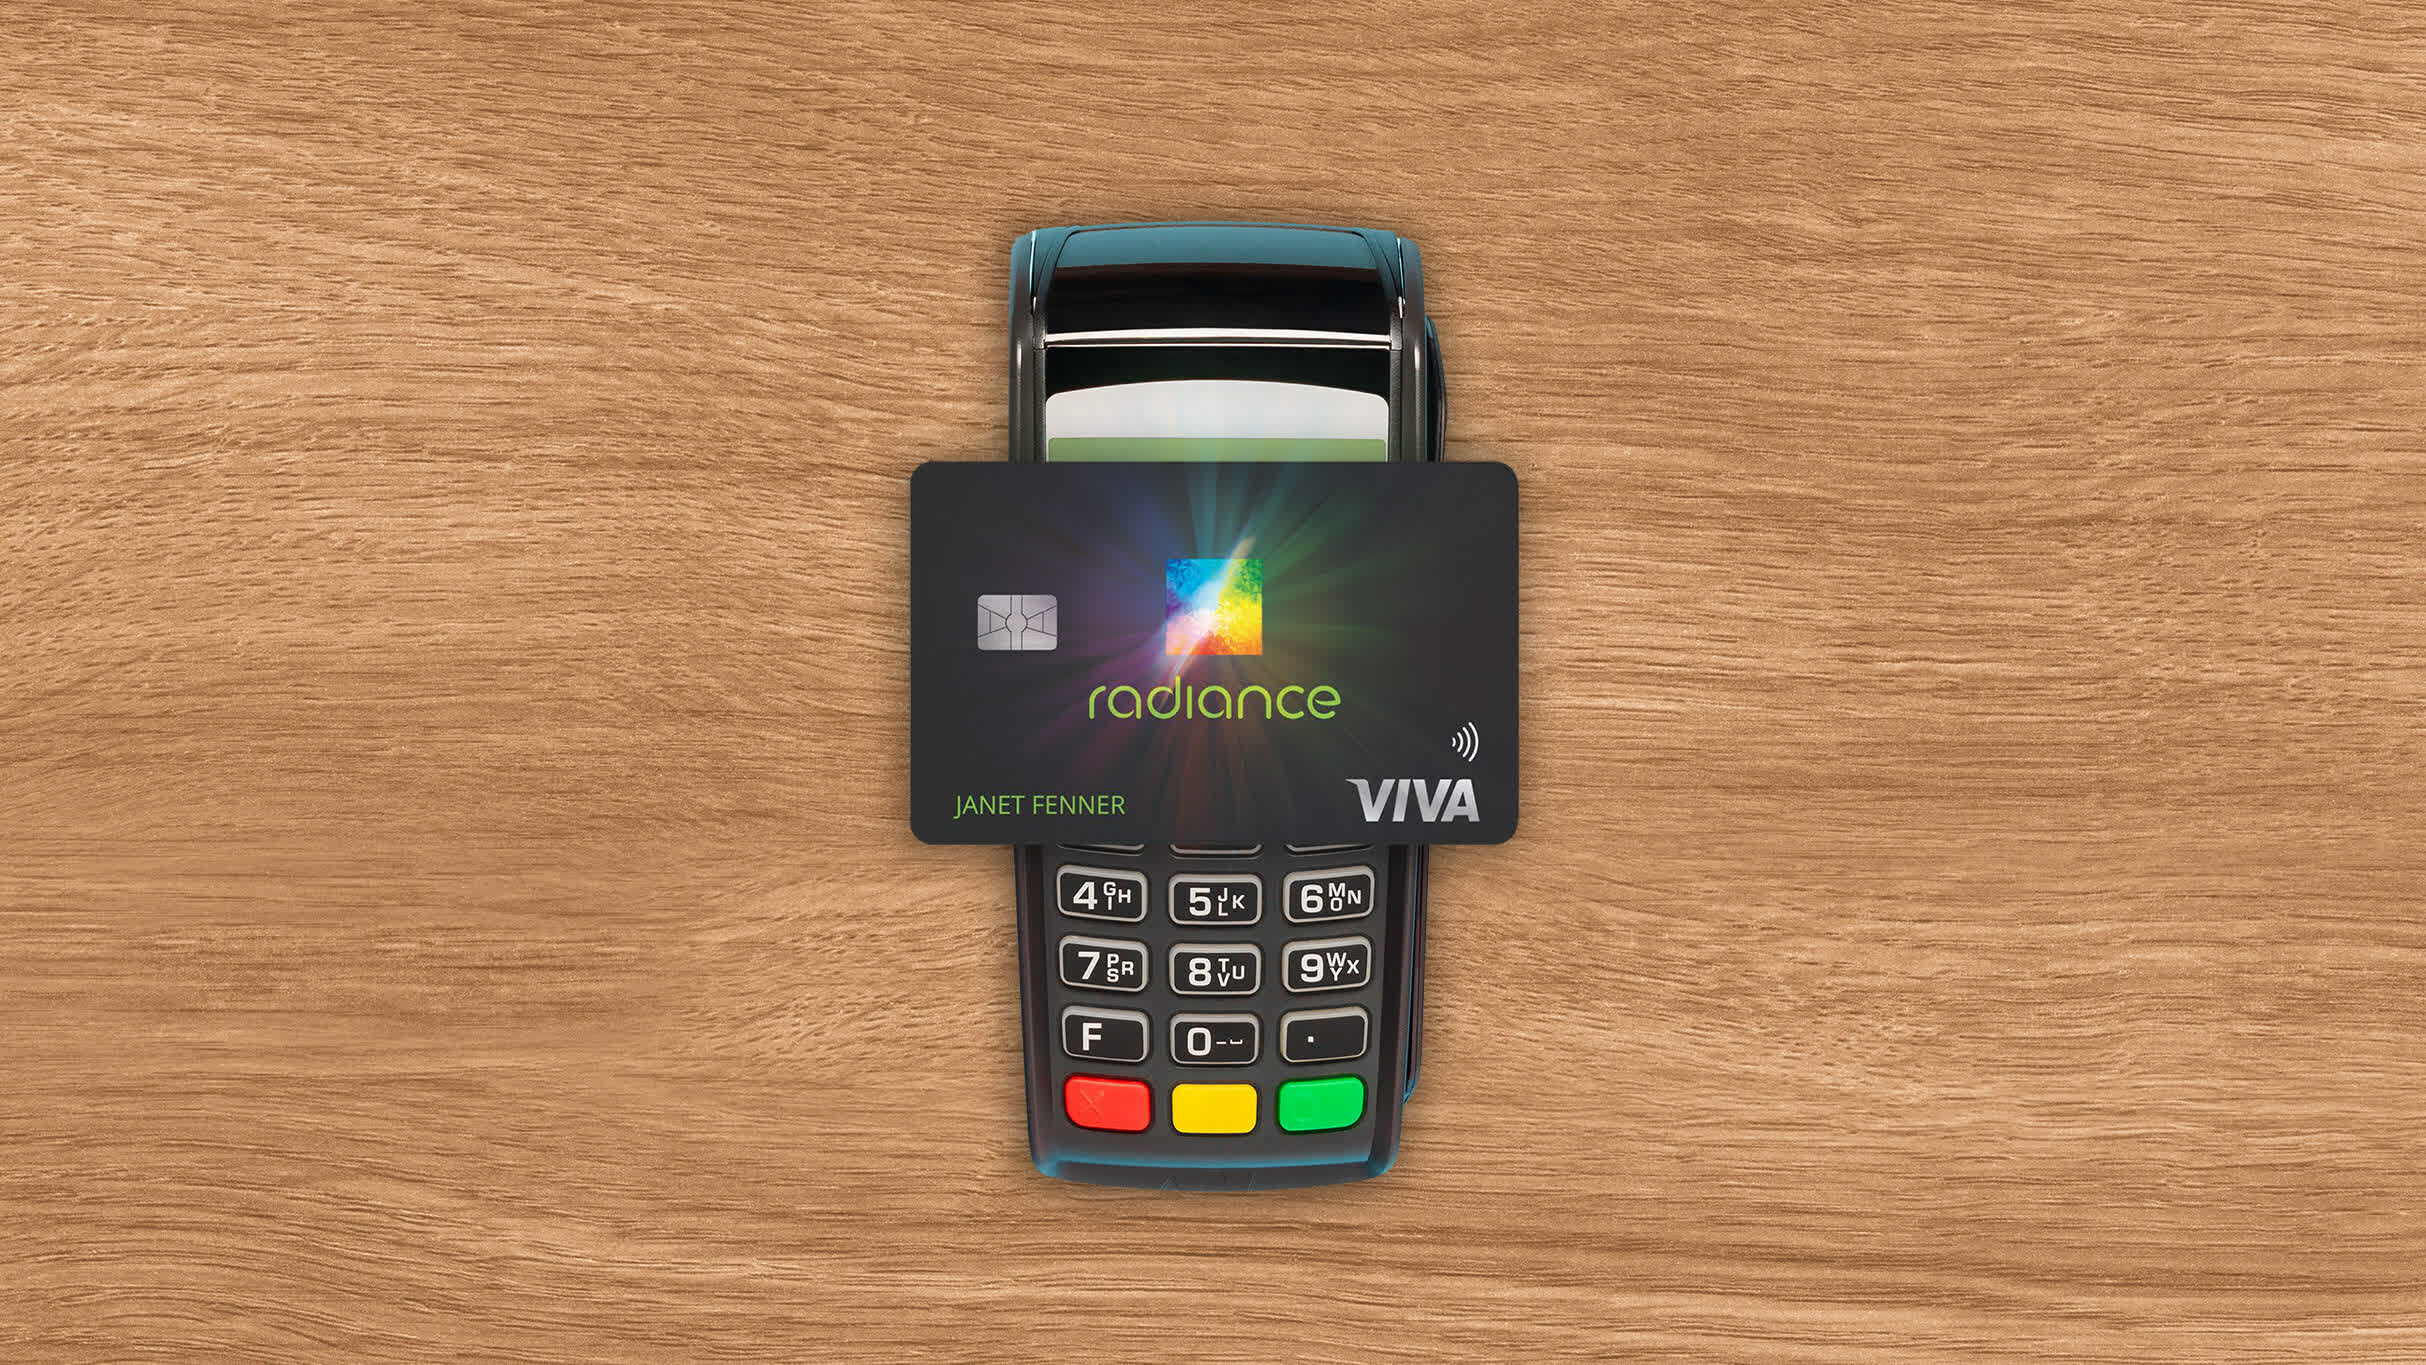 Estas tarjetas de crédito cuentan con OLED que se iluminan al realizar el pago